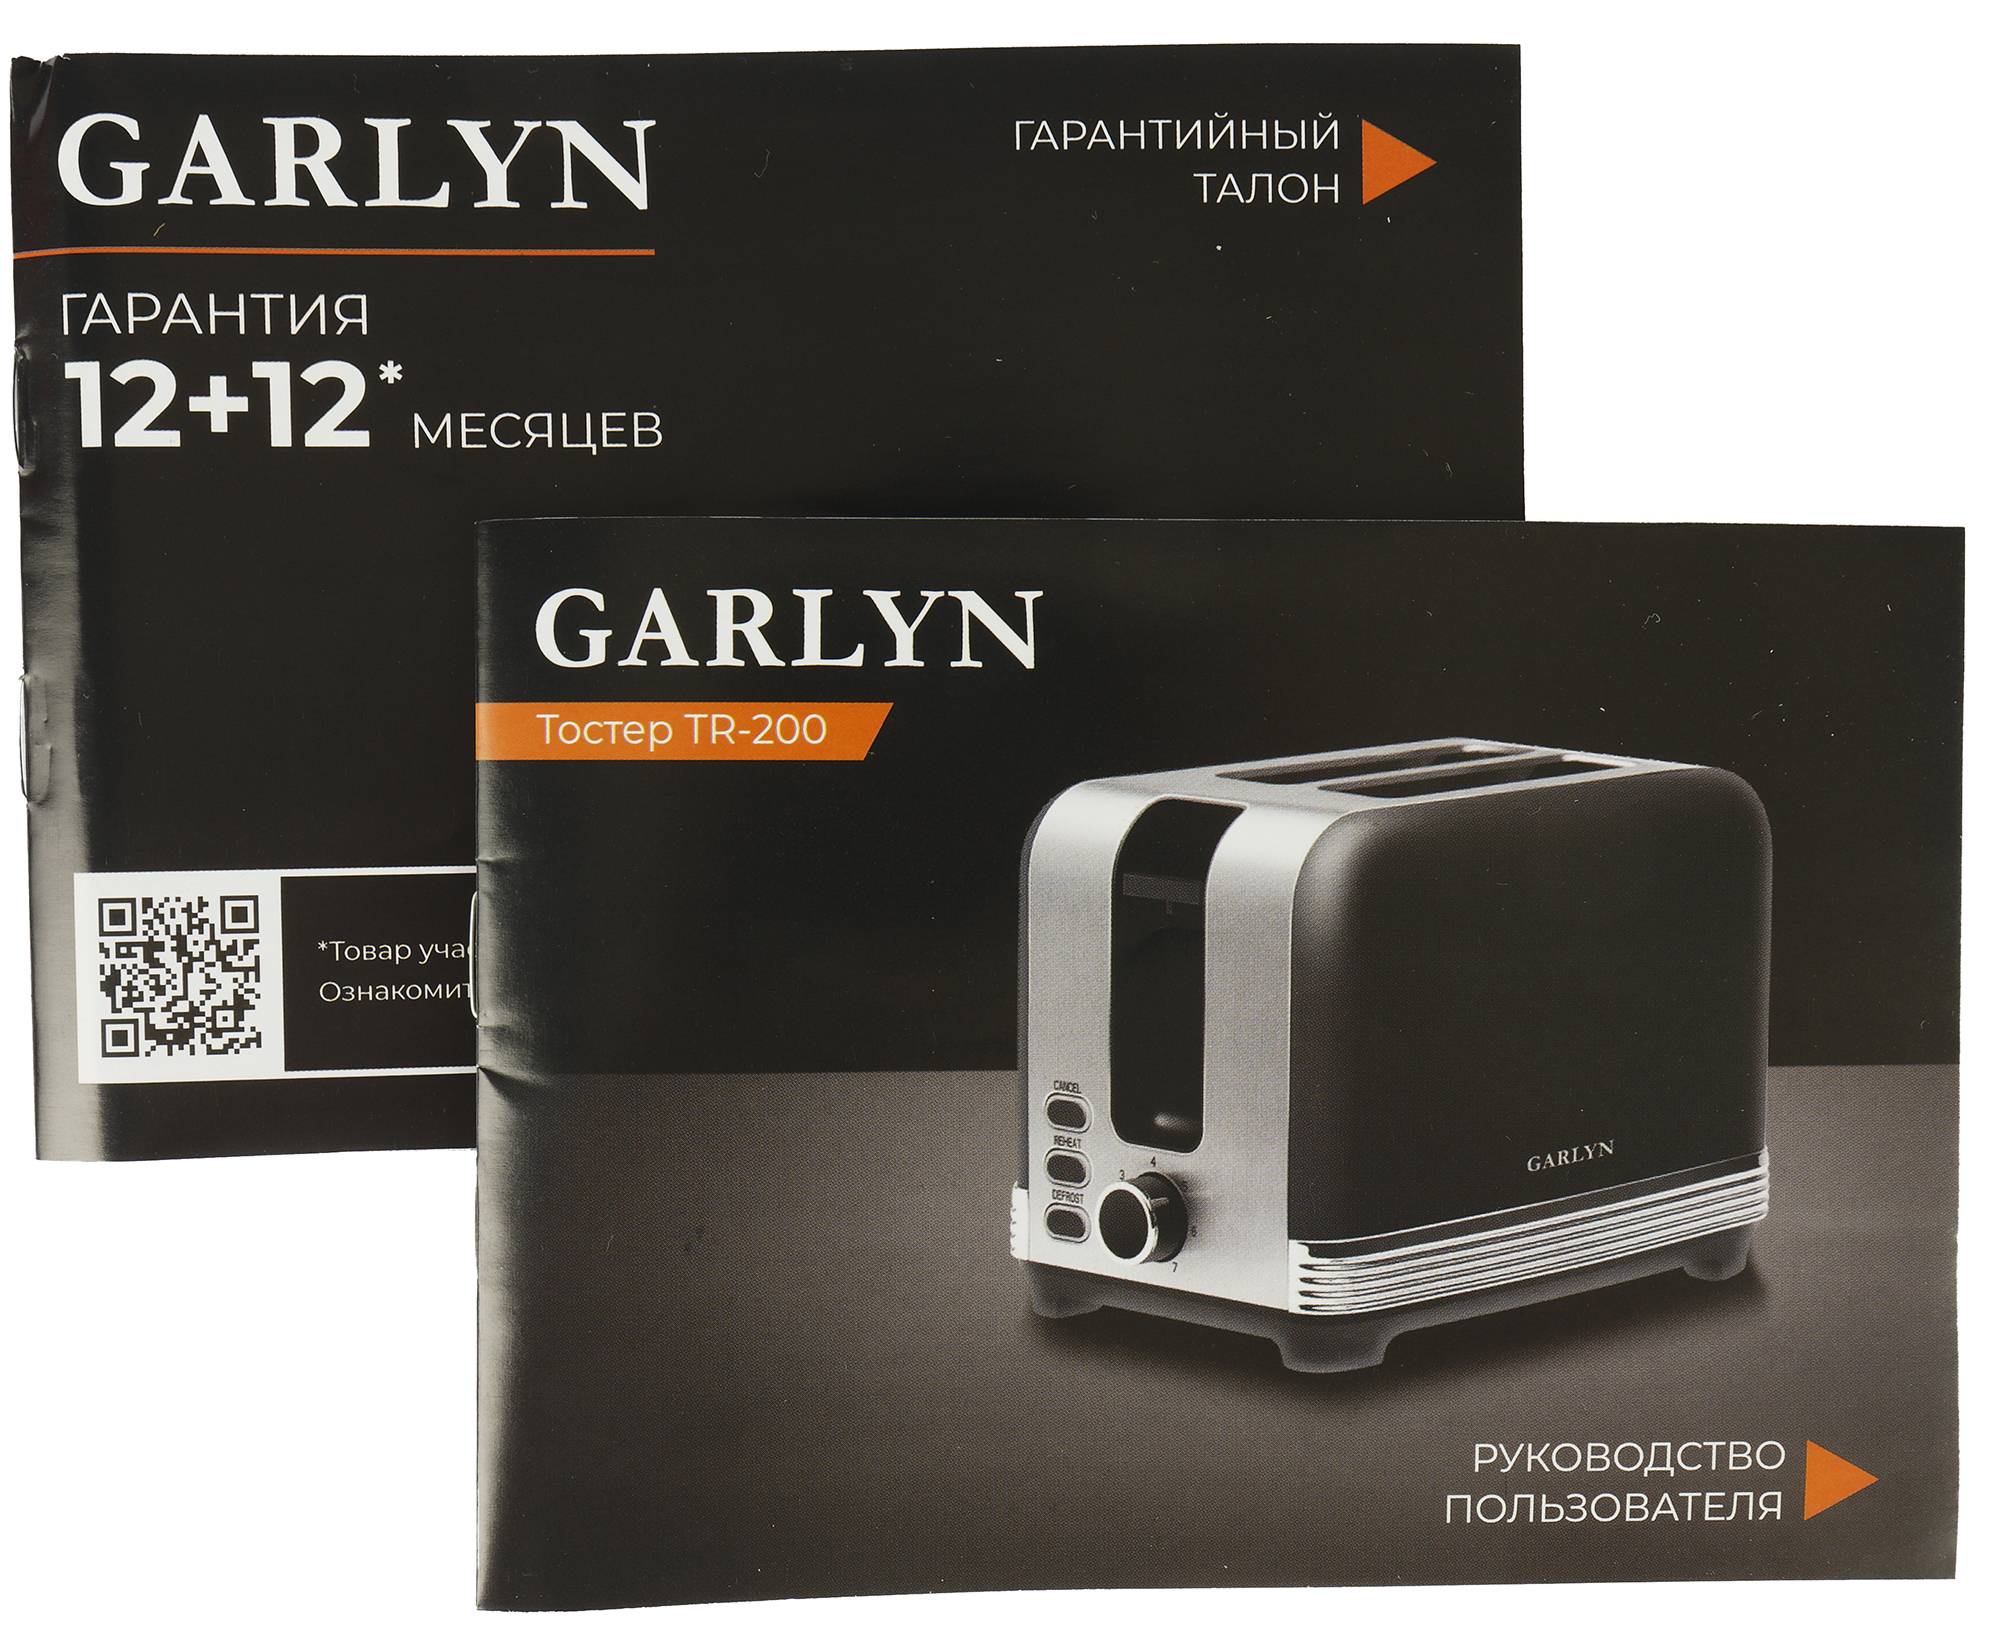 Garlyn barista compact отзывы. Тостер Garlyn tr-200. Garlyn v-800 вакууматор. Беспроводной утюг Garlyn gt-240. Индукционные плиты Garlyn h-7000.